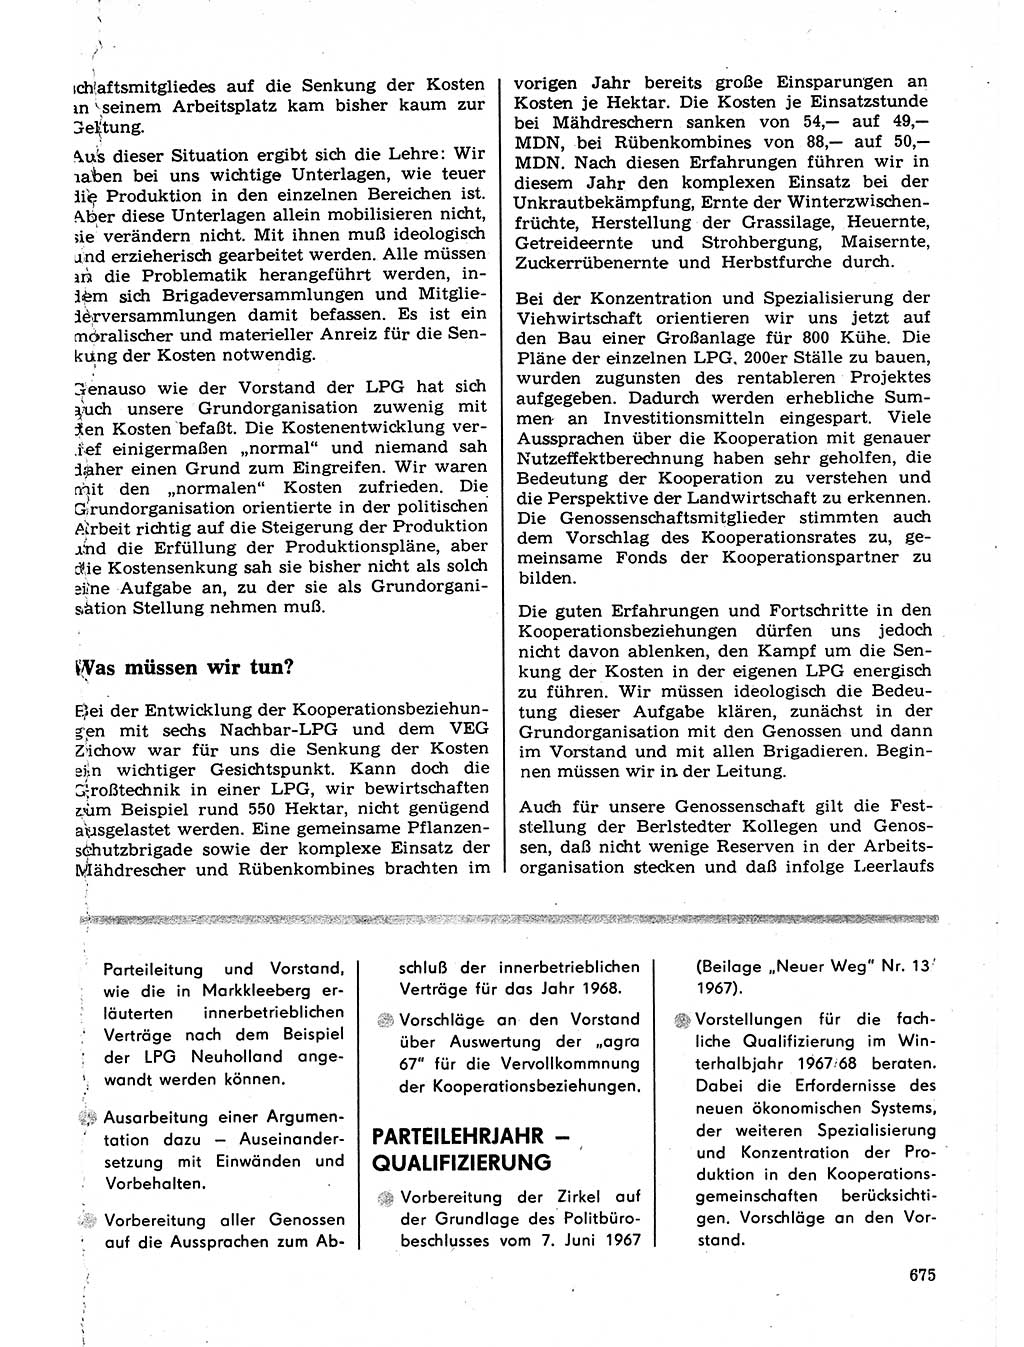 Neuer Weg (NW), Organ des Zentralkomitees (ZK) der SED (Sozialistische Einheitspartei Deutschlands) für Fragen des Parteilebens, 22. Jahrgang [Deutsche Demokratische Republik (DDR)] 1967, Seite 675 (NW ZK SED DDR 1967, S. 675)